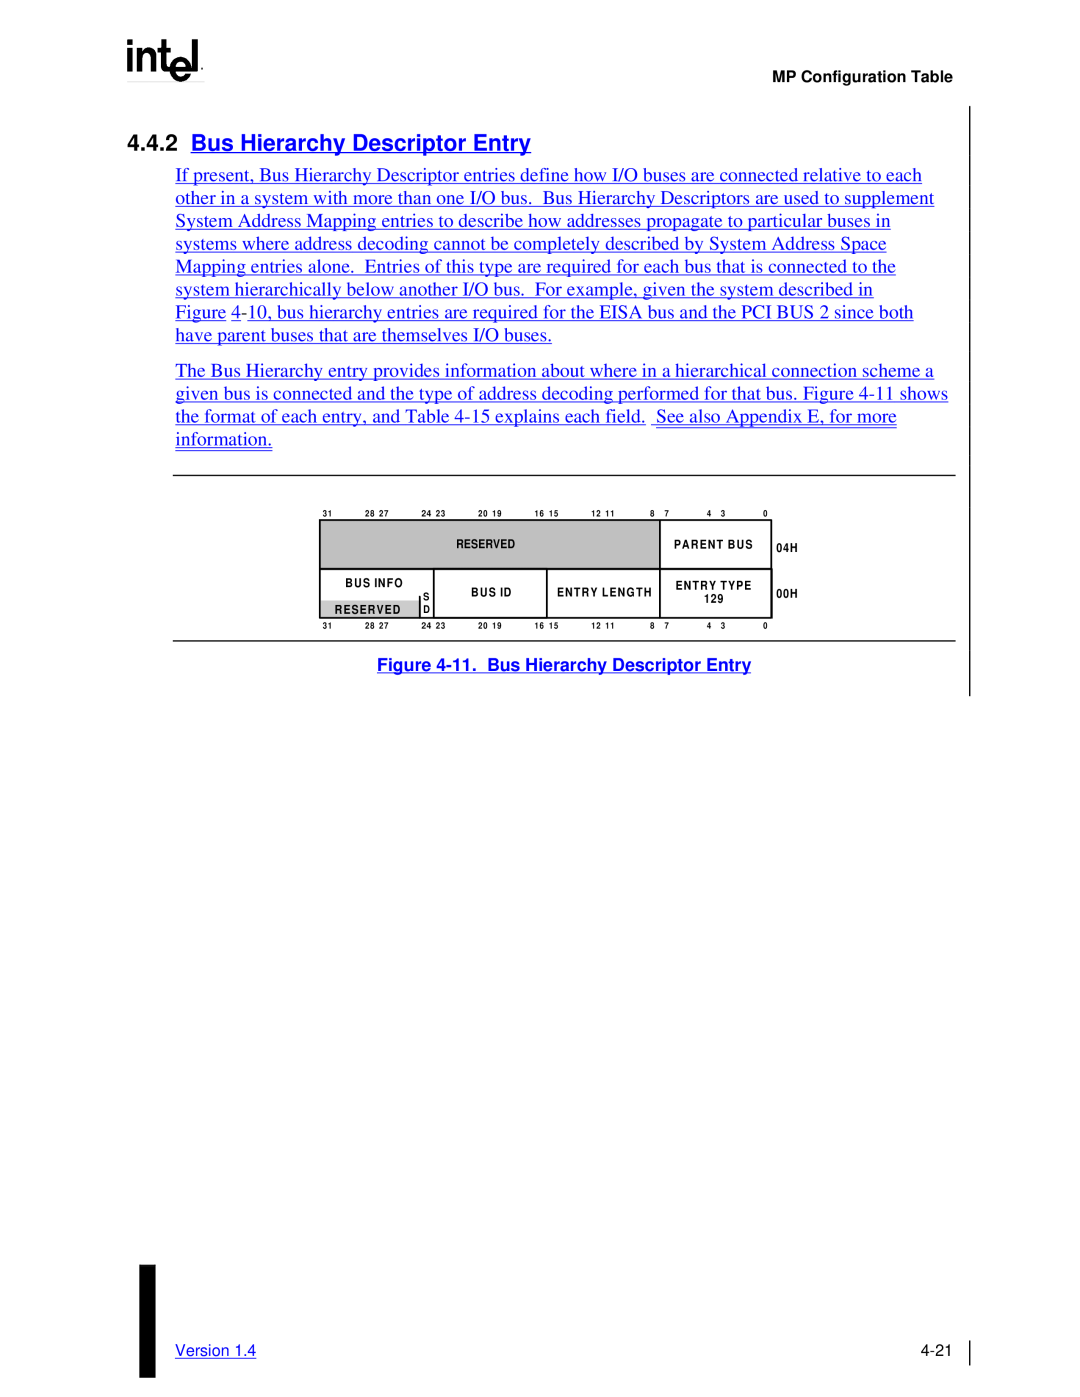 Intel MultiProcessor manual 4.4.2Bus Hierarchy Descriptor Entry, 11.Bus Hierarchy Descriptor Entry 